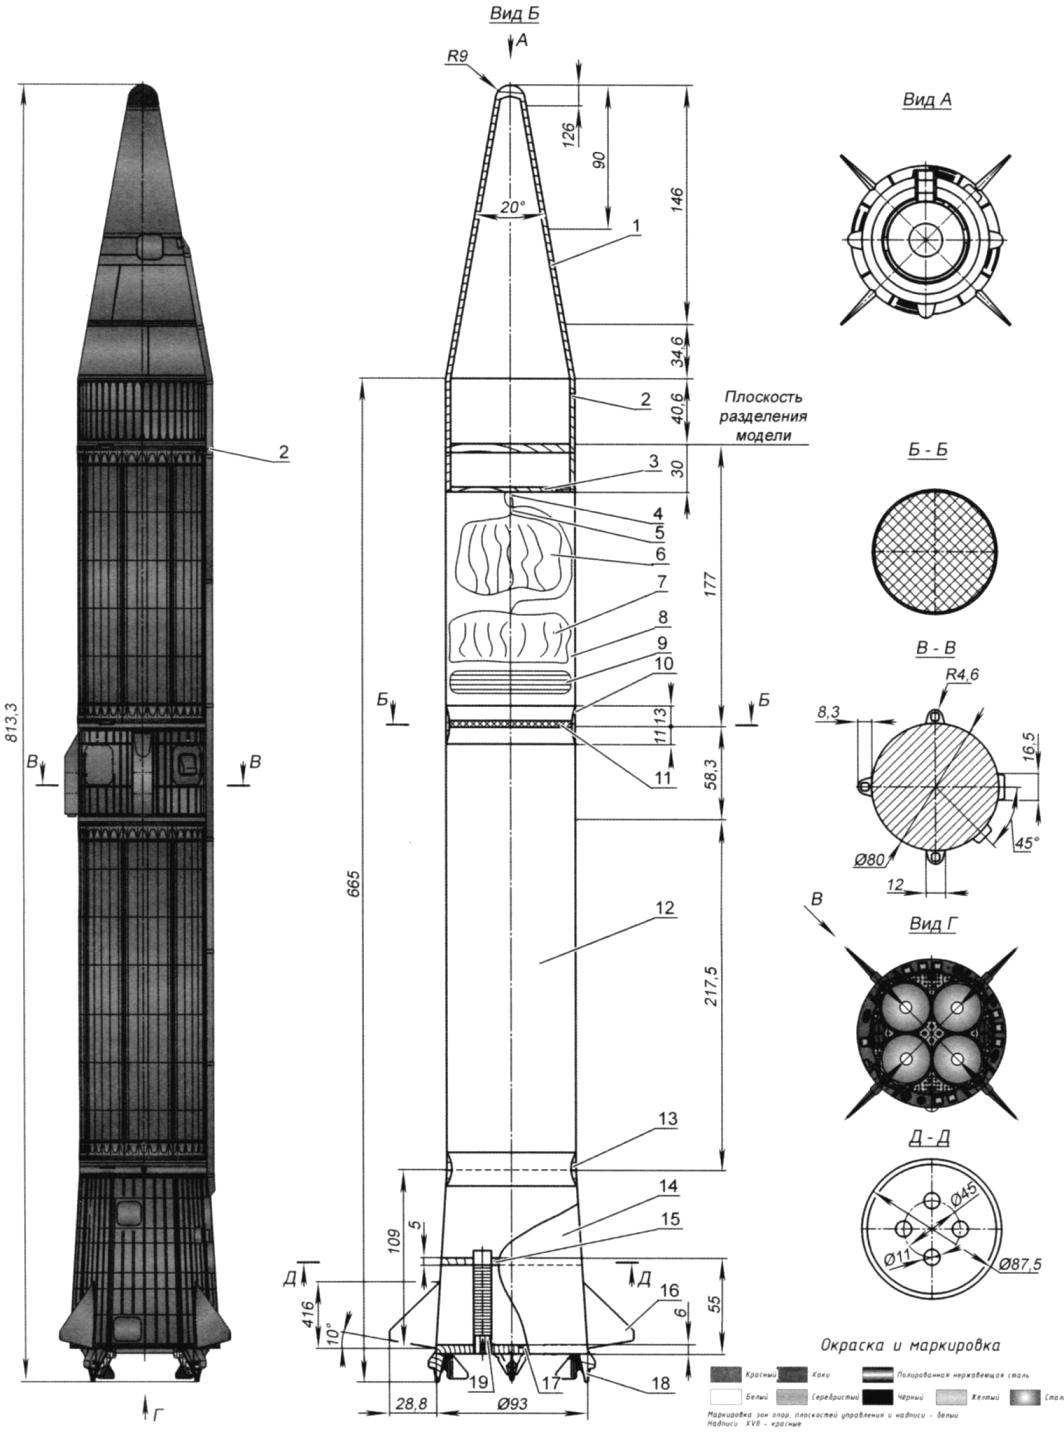 Рис.2. Модель-копия ракеты Р-14